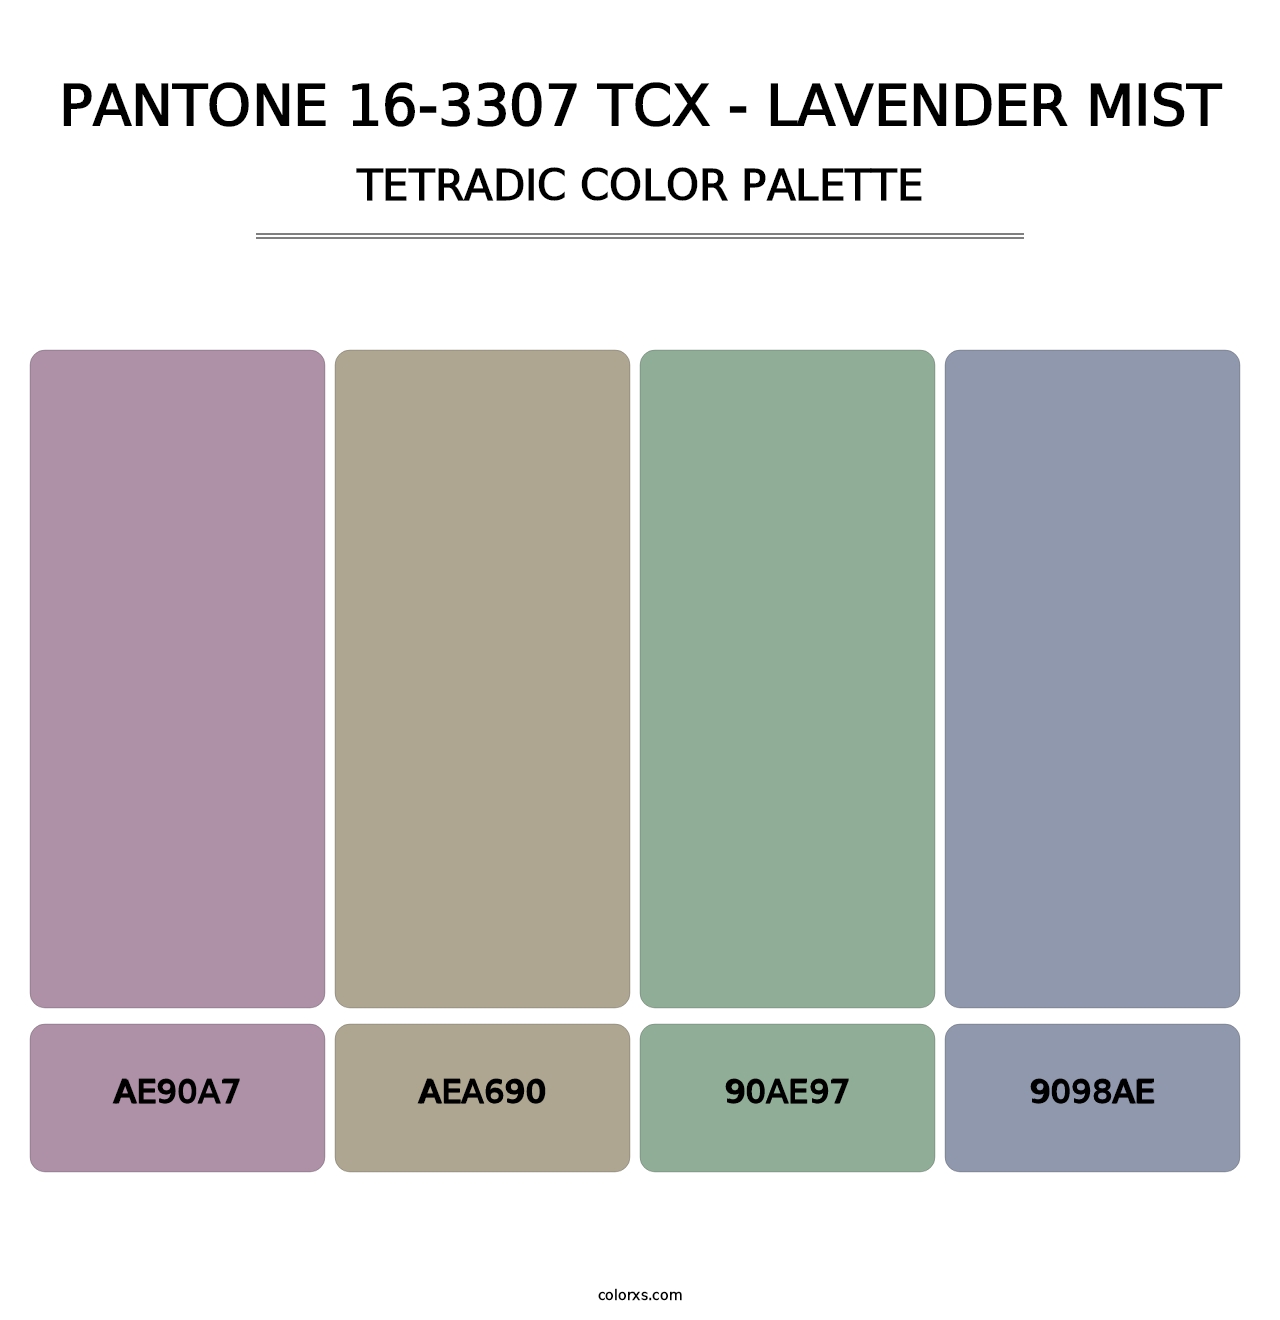 PANTONE 16-3307 TCX - Lavender Mist - Tetradic Color Palette